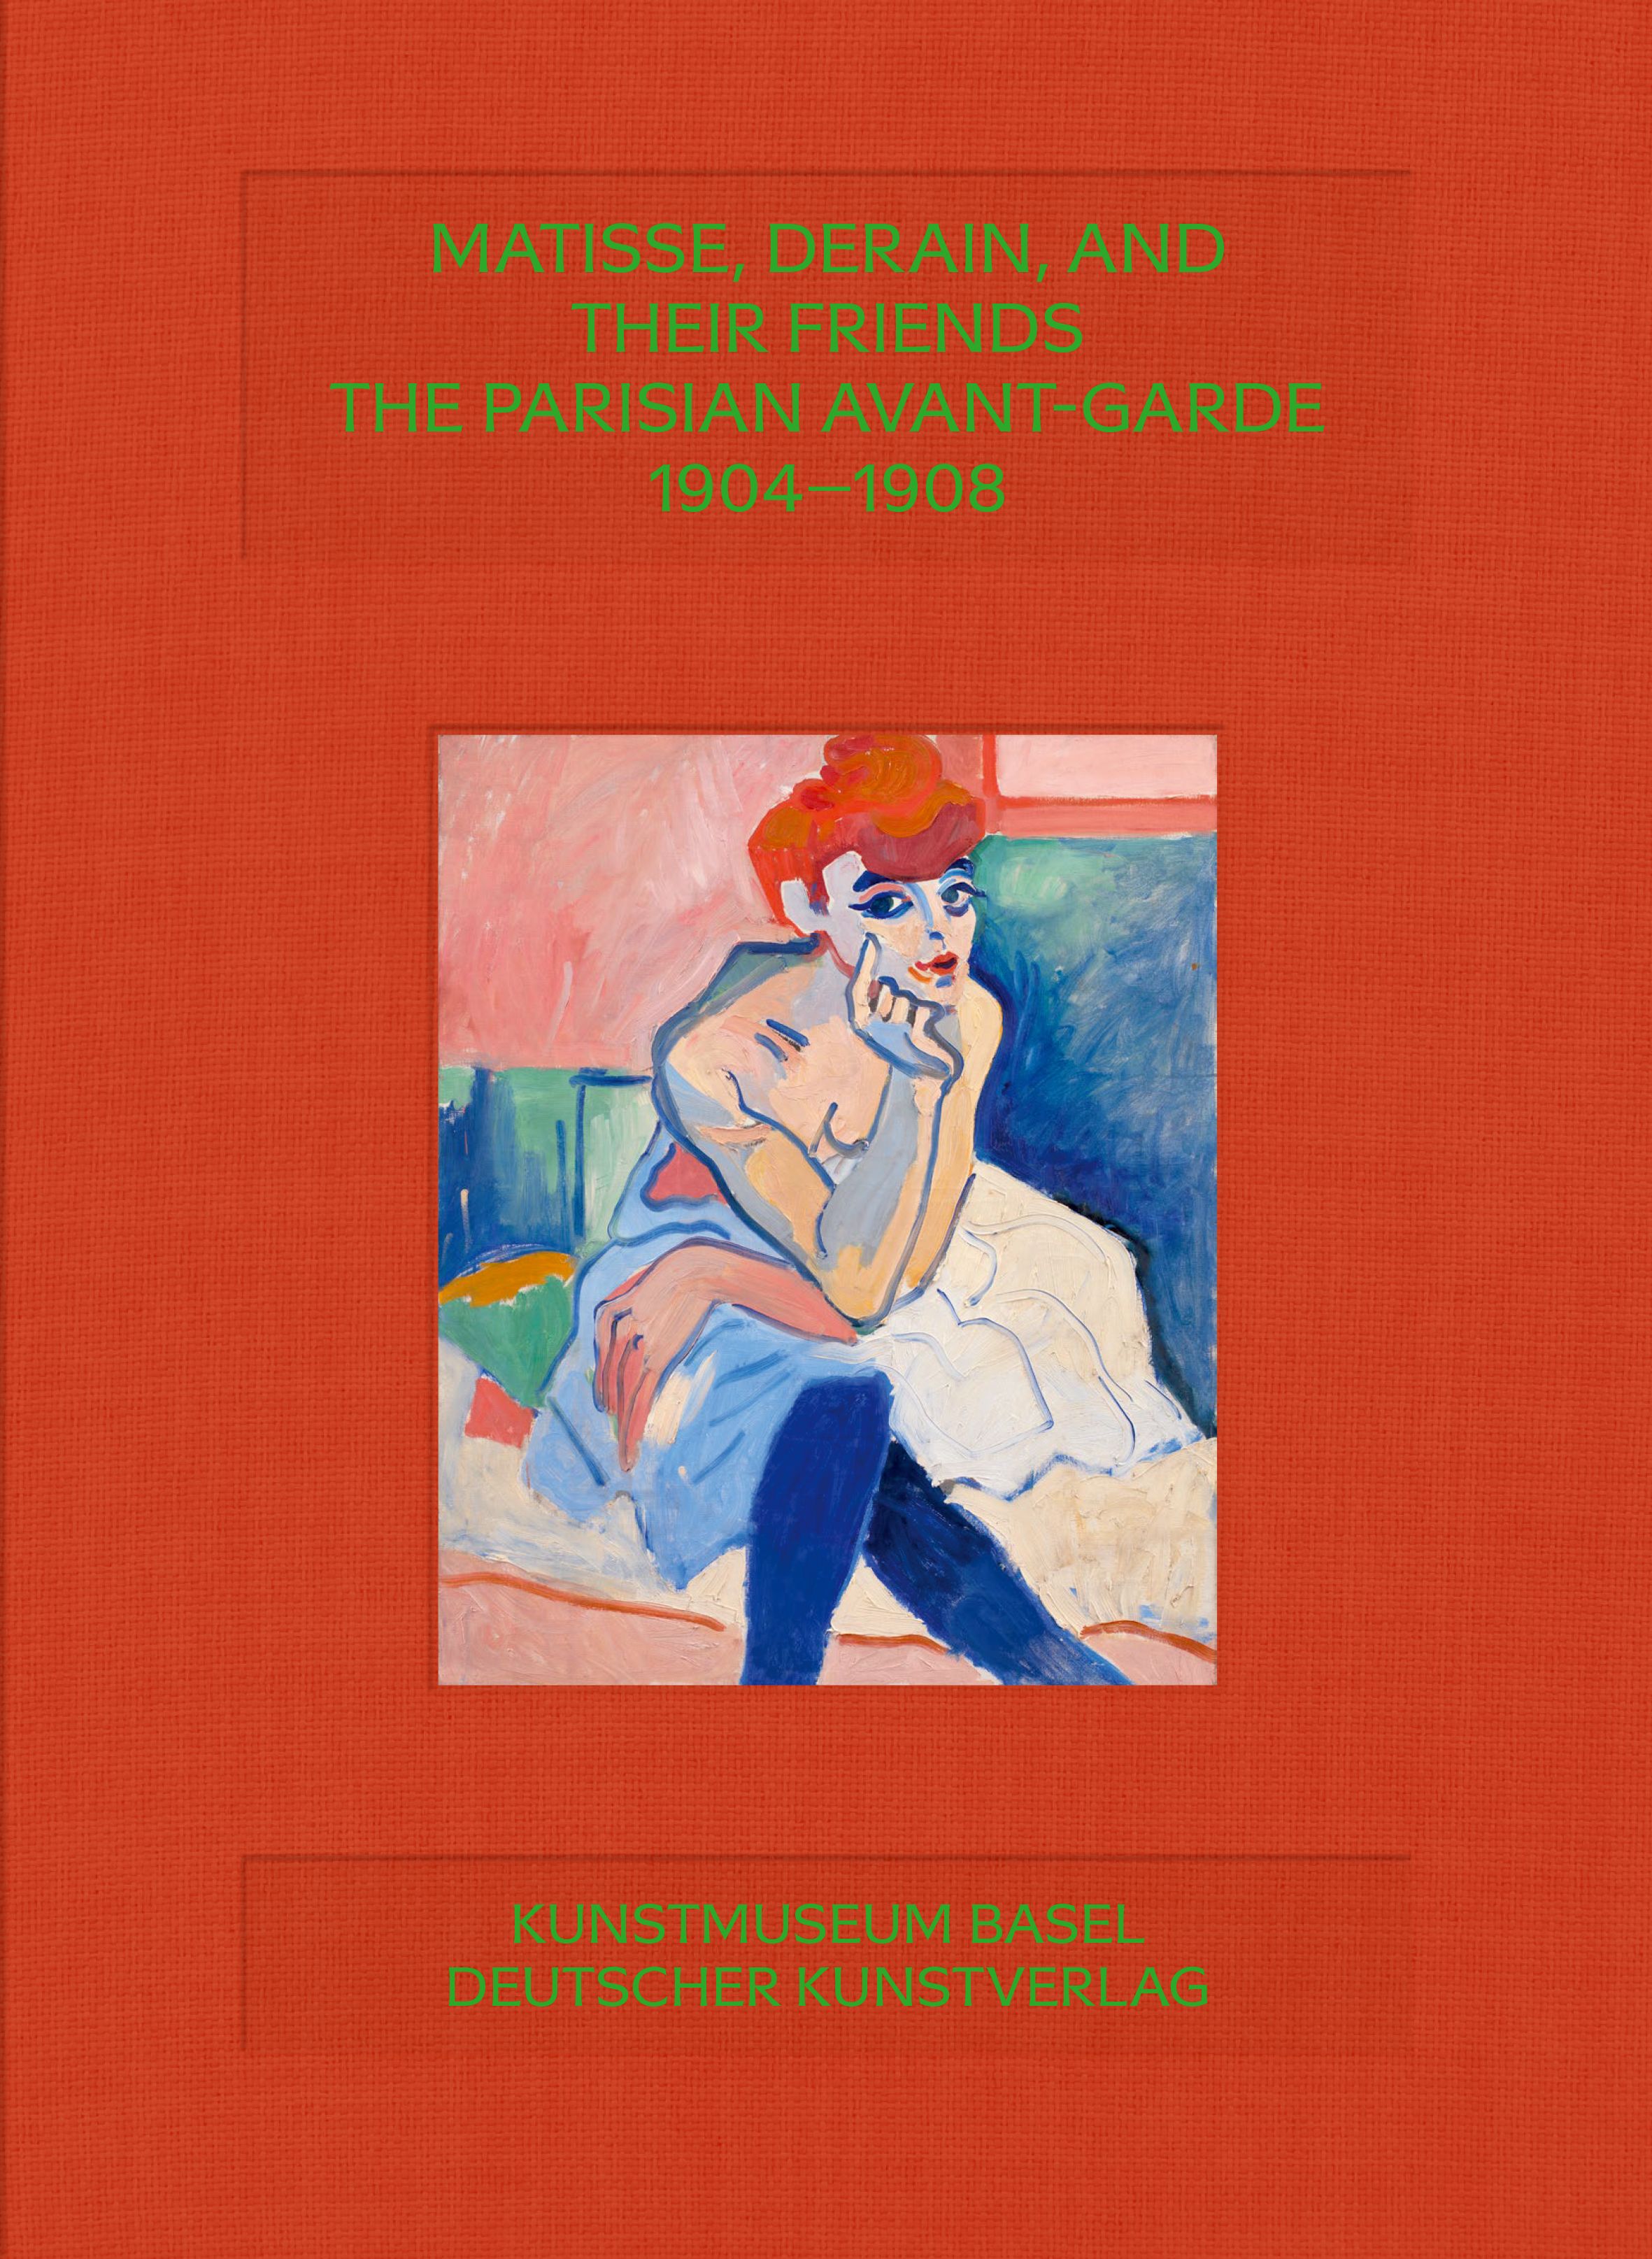 MATISSE, DERAIN, AND THEIR FRIENDS - THE PARISIAN AVANT-GARDE 1904-1908, E, Kunstmuseum Basel, Deutscher Kunstverlag, 2023 *ADS*